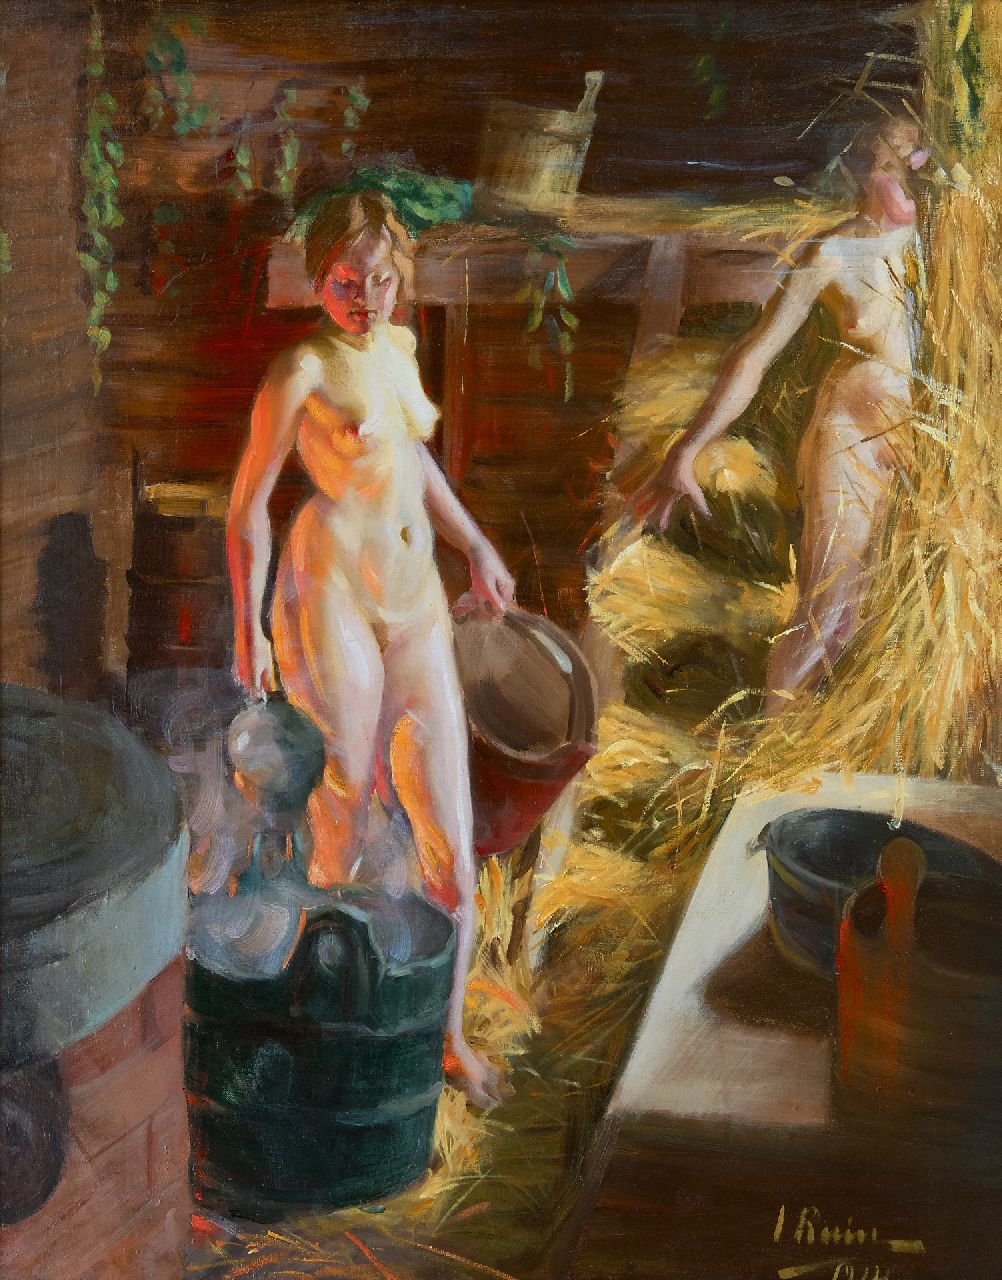 Ruin I.L.  | Ingrid Linnea Ruin | Schilderijen te koop aangeboden | Twee meisjes in de sauna, olieverf op doek 92,3 x 76,3 cm, gesigneerd rechtsonder en gedateerd 1914